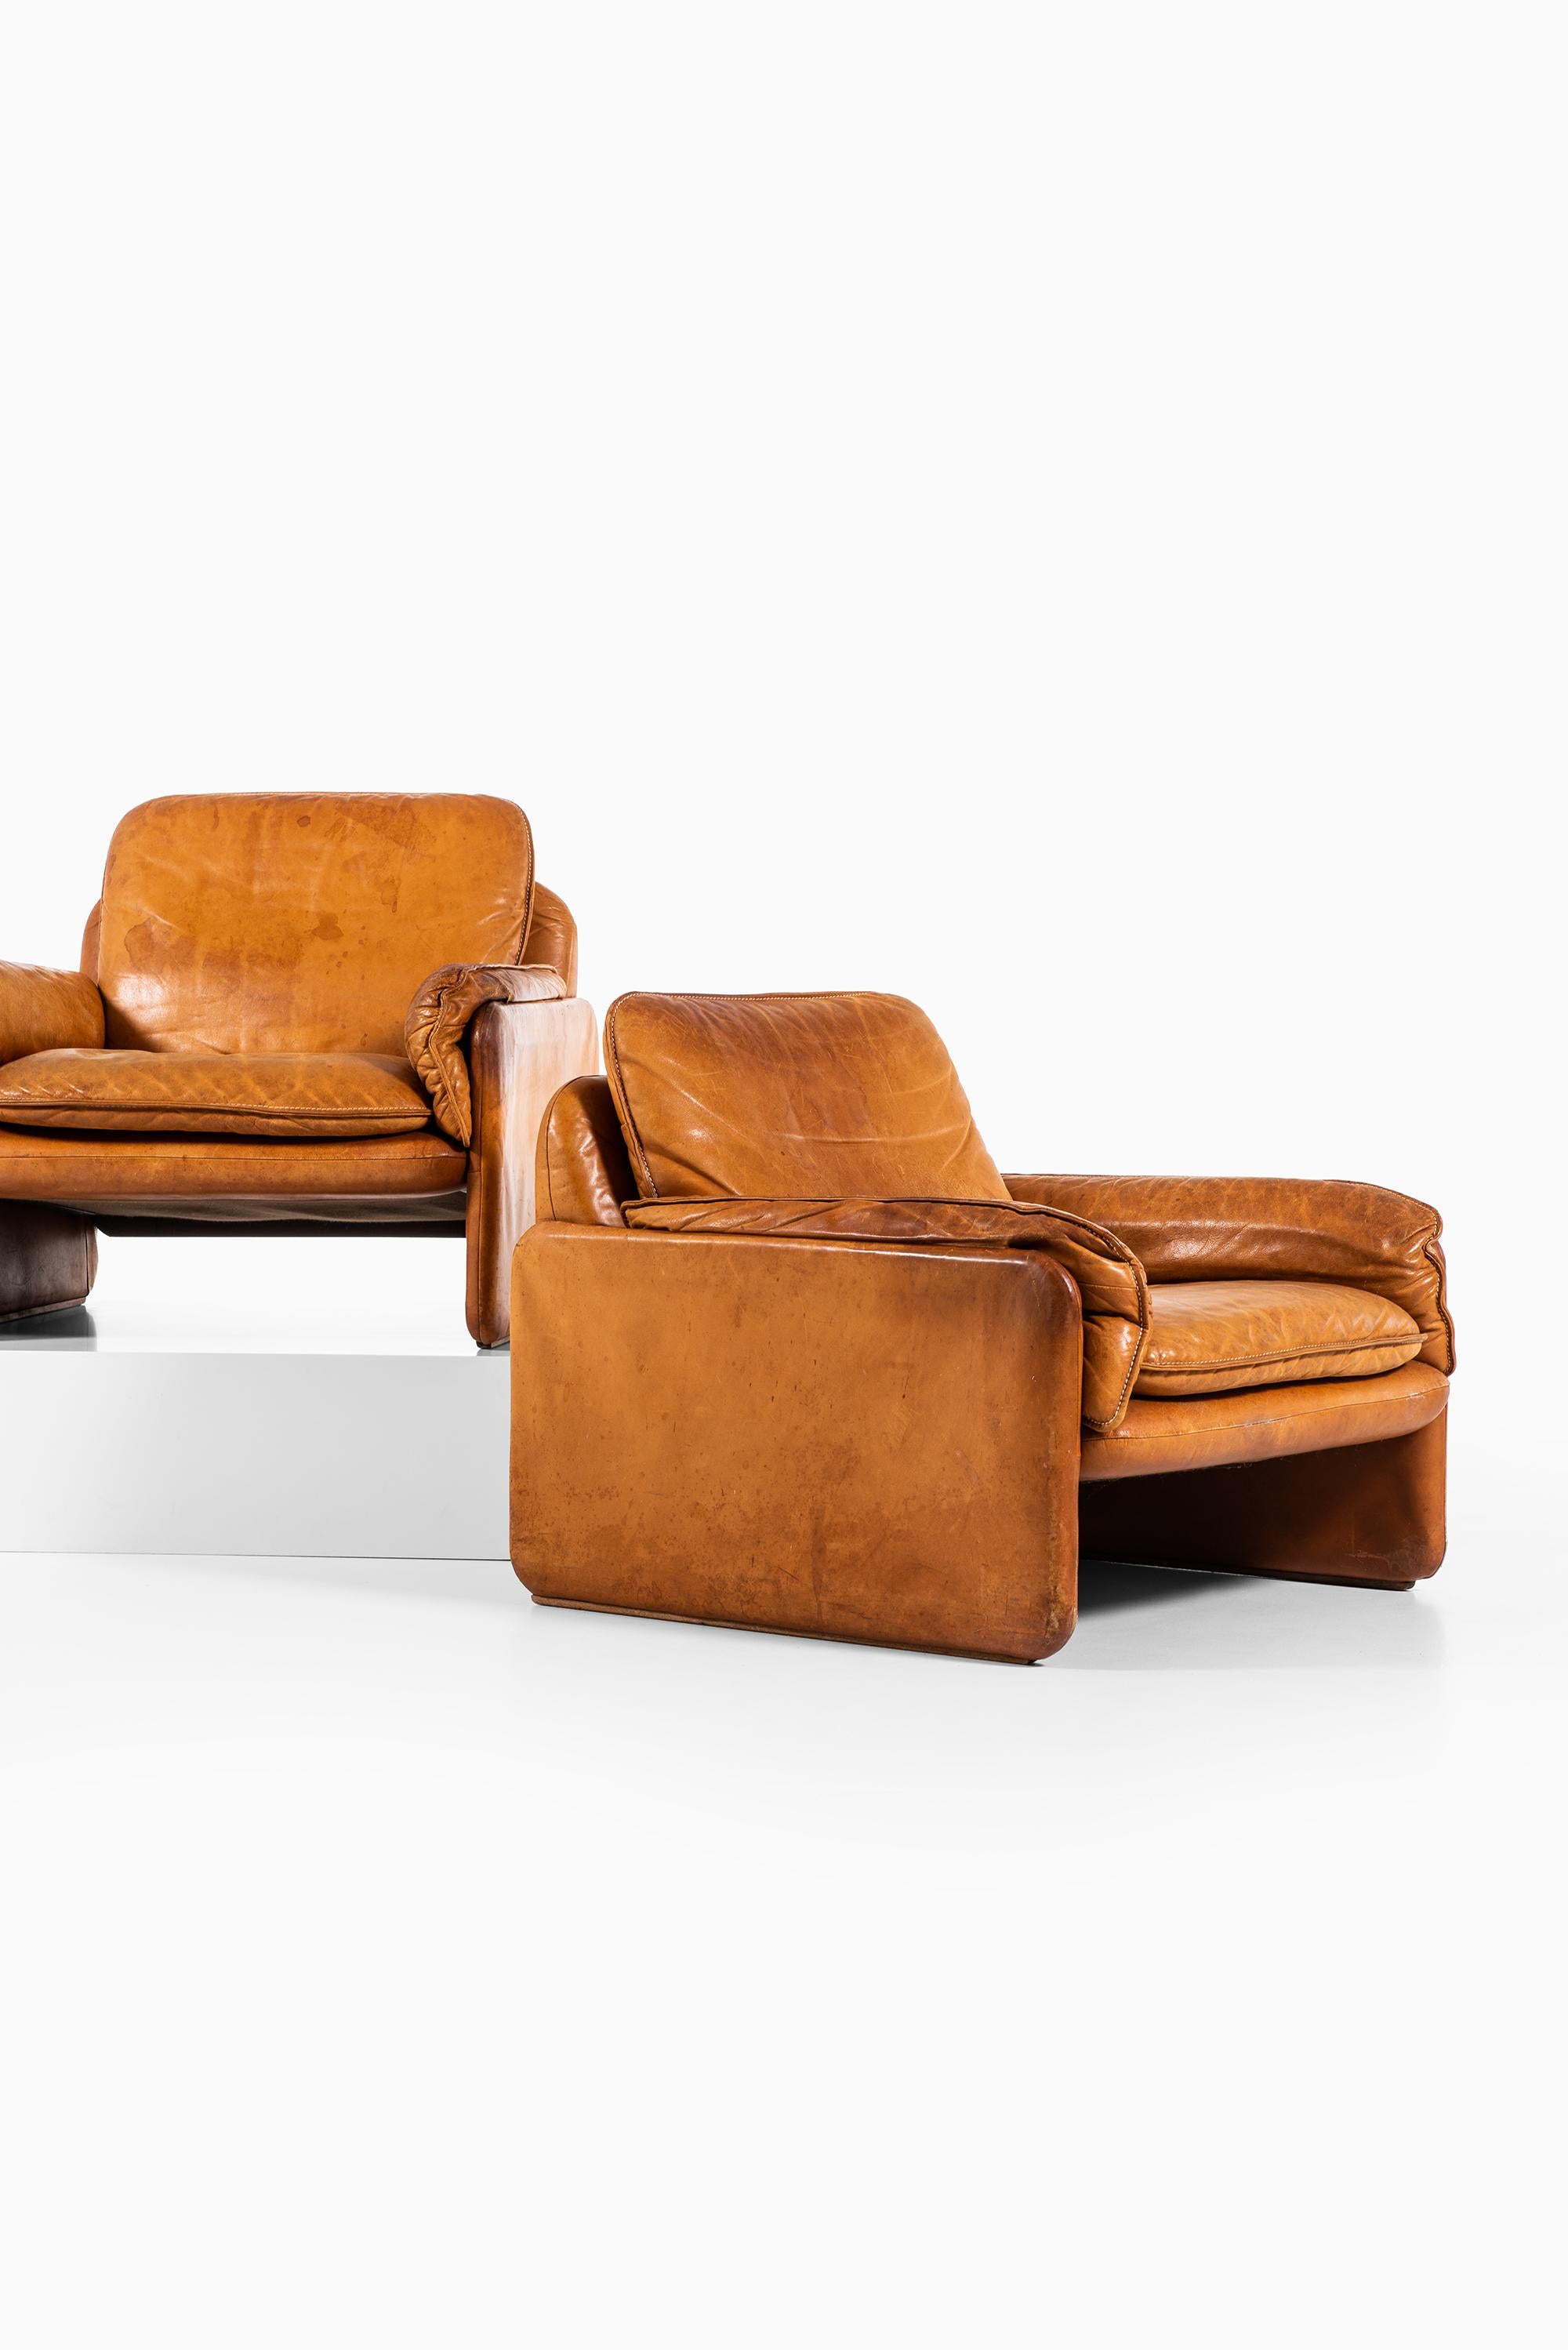 Seltenes Paar Sessel Modell DS-61. Produziert von De Sede in der Schweiz.